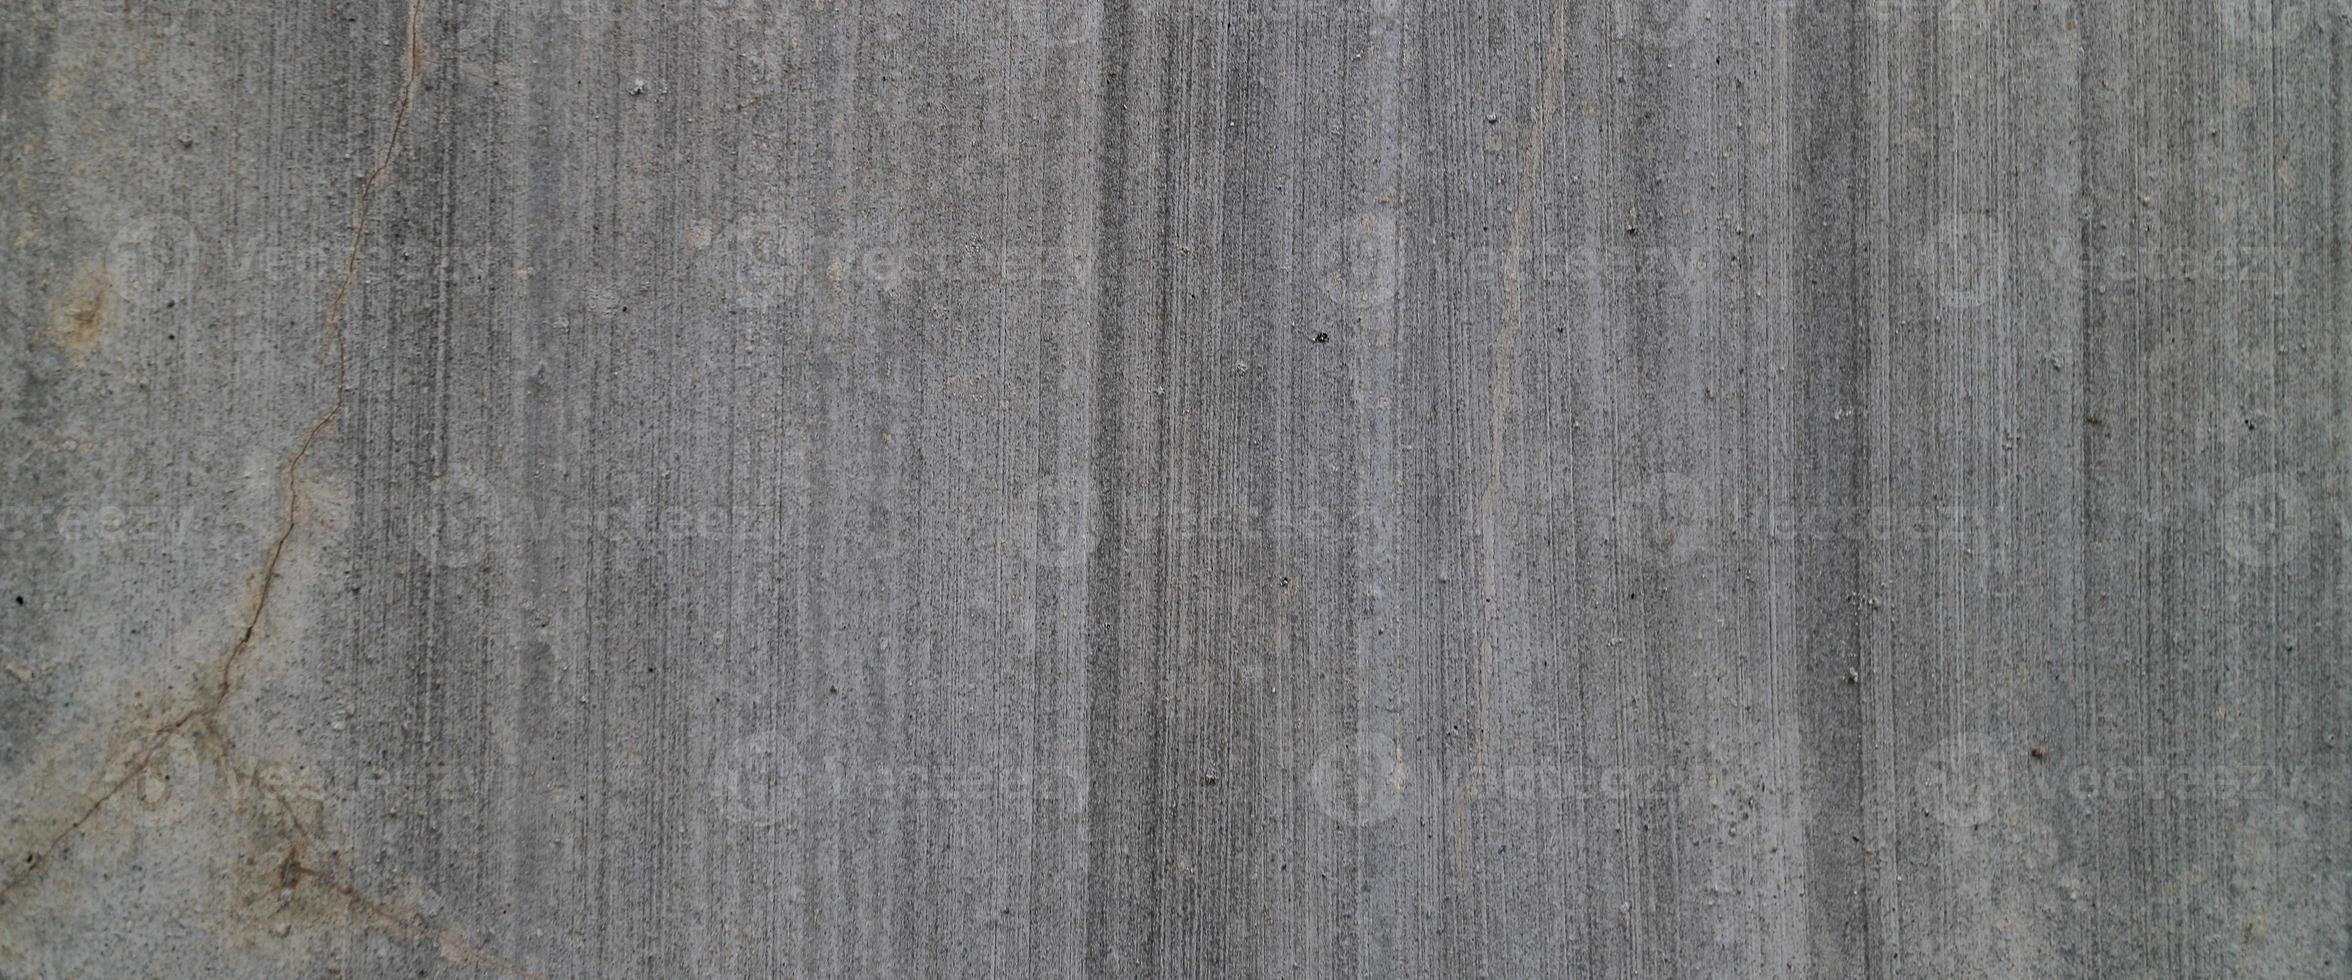 fond de texture de ciment ancien gris. ciment horizontal et texture béton. photo